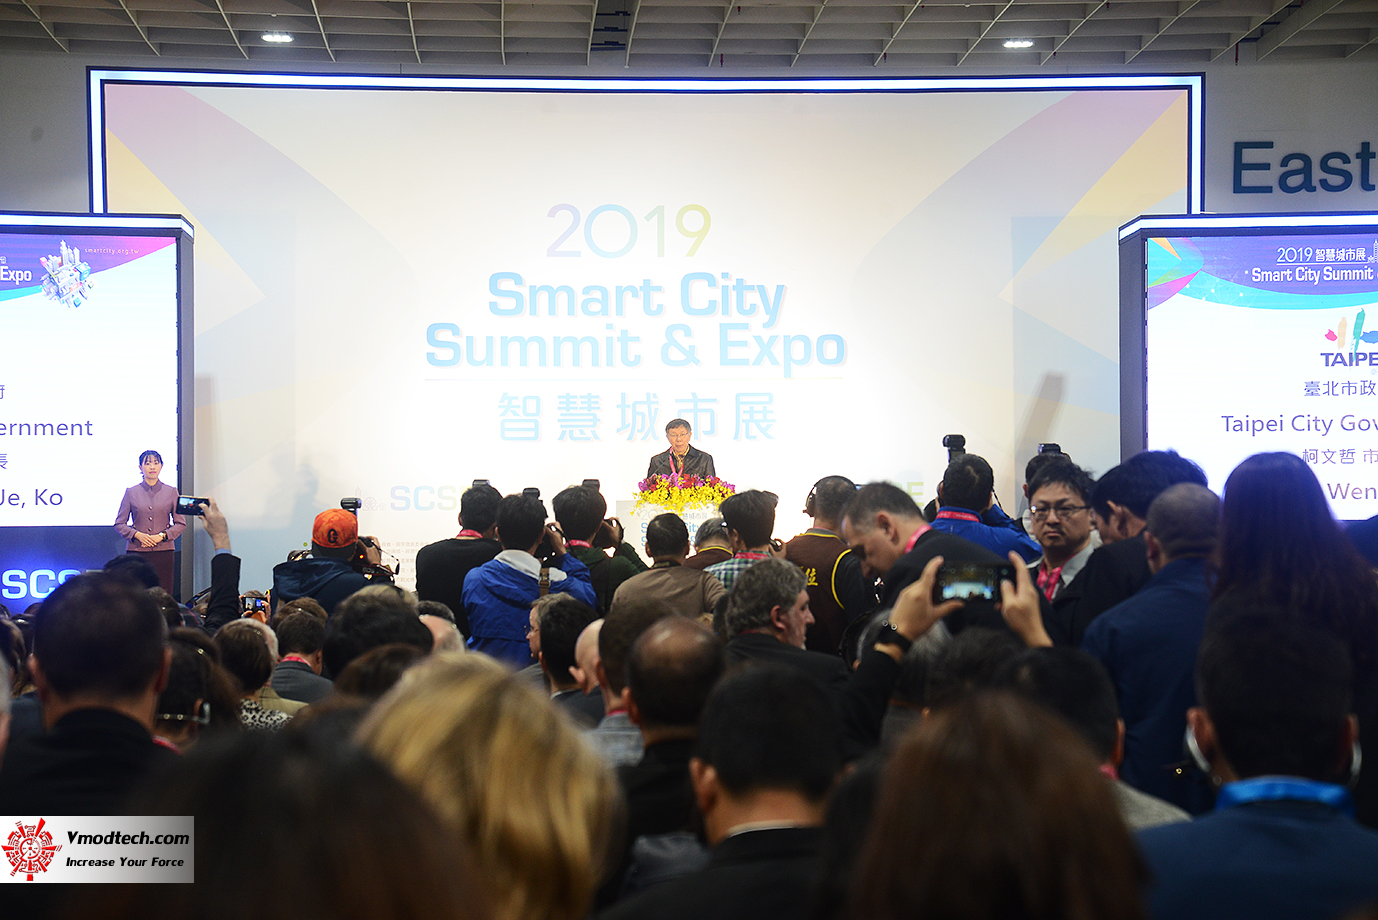 dsc 8226 เยี่ยมชมพิธีเปิด 2019 SMART CITY SUMMIT & EXPO ณ กรุงไทเป ประเทศไต้หวัน 